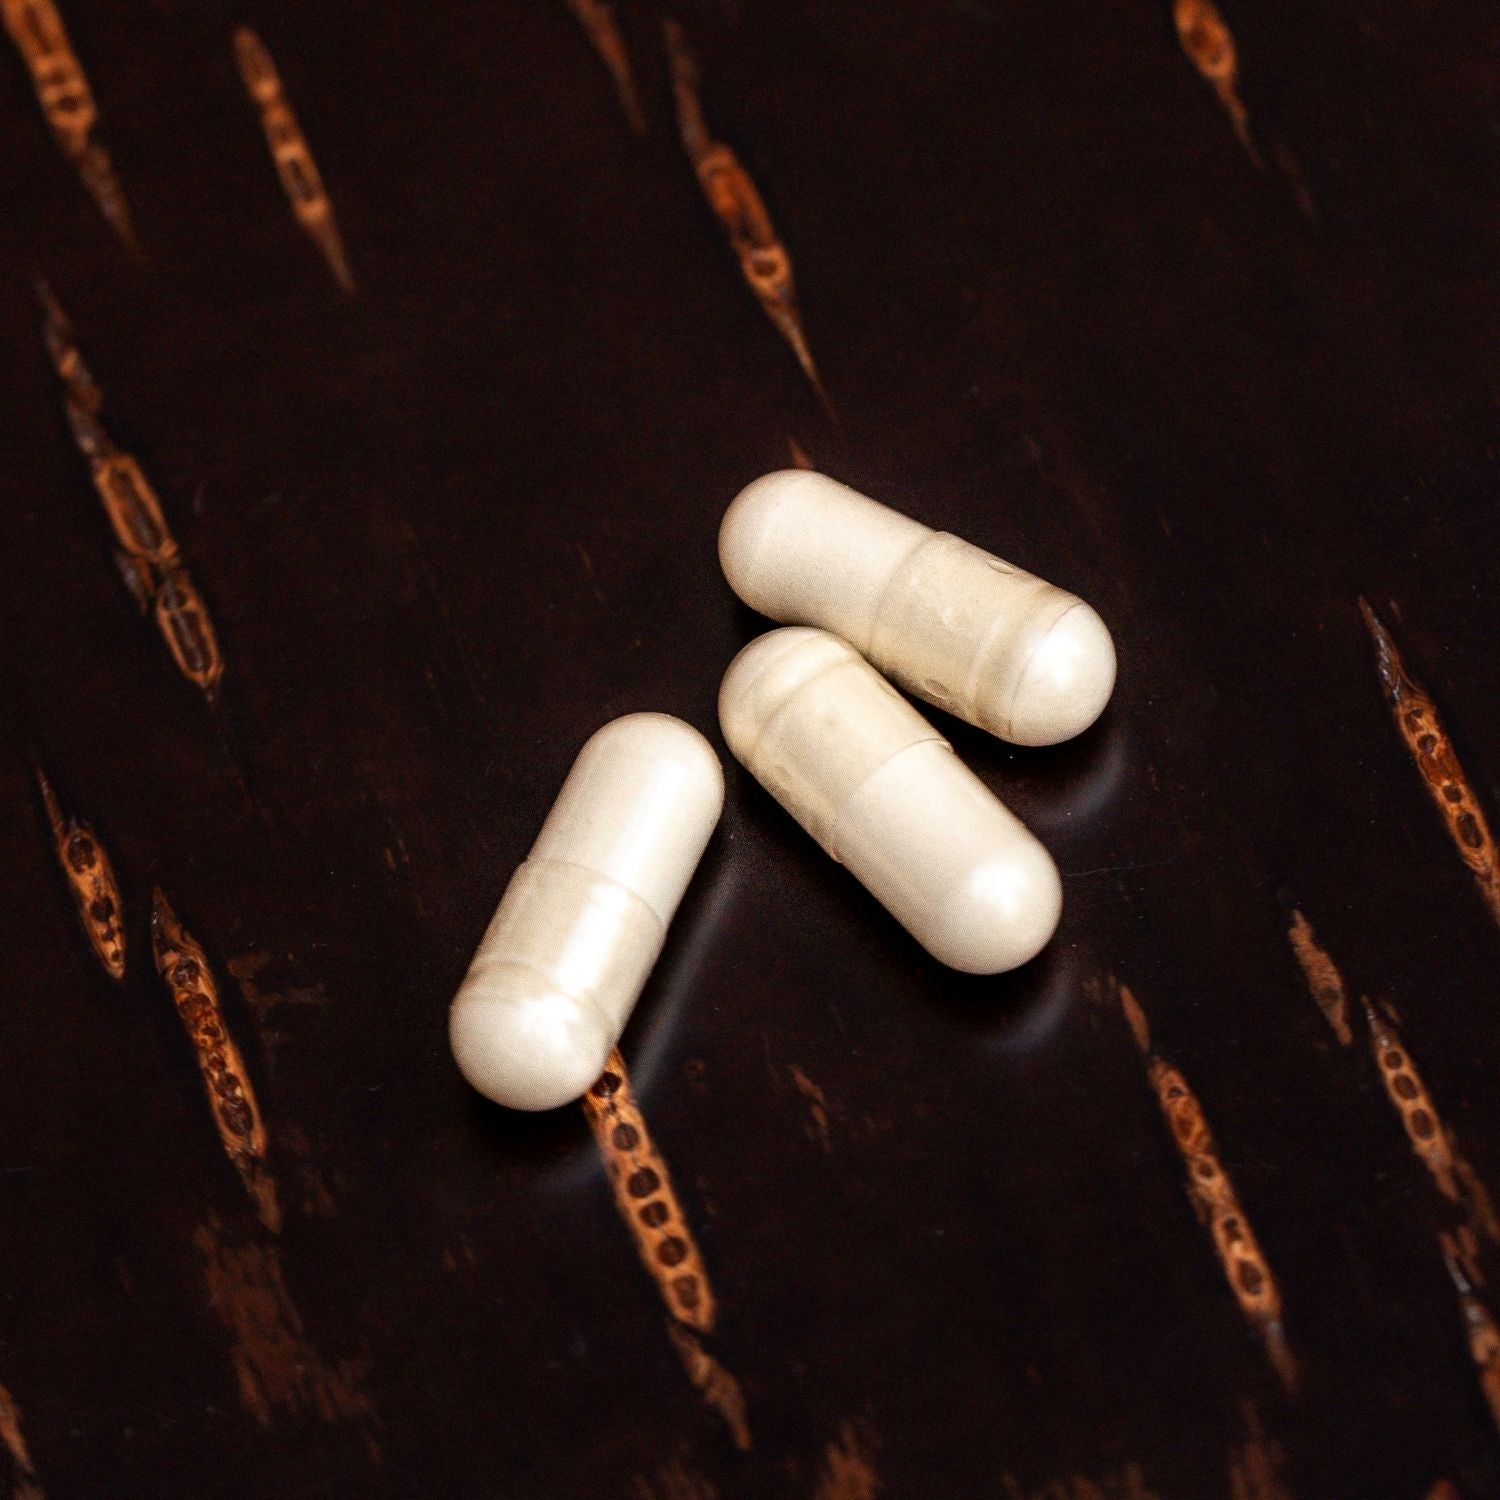 Primeadine® Original & GF Spermidine Supplement Mixed - Original Pills